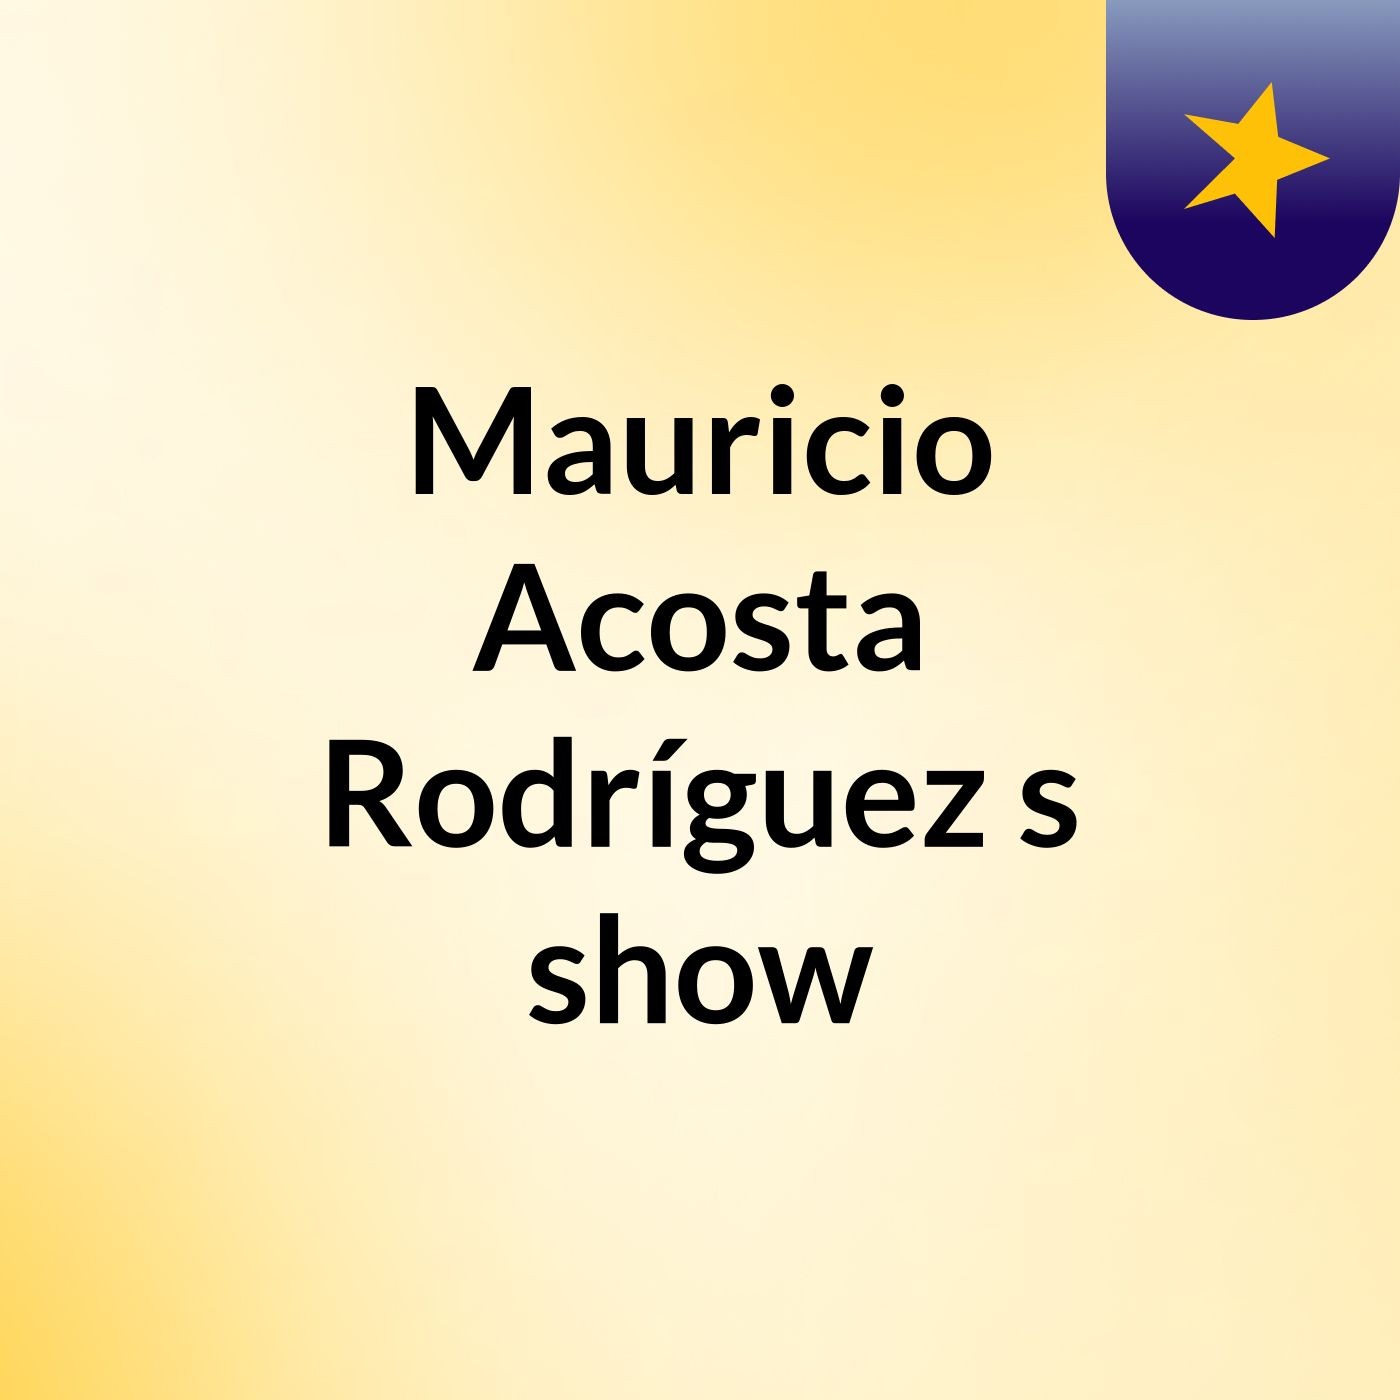 Mauricio Acosta Rodríguez's show